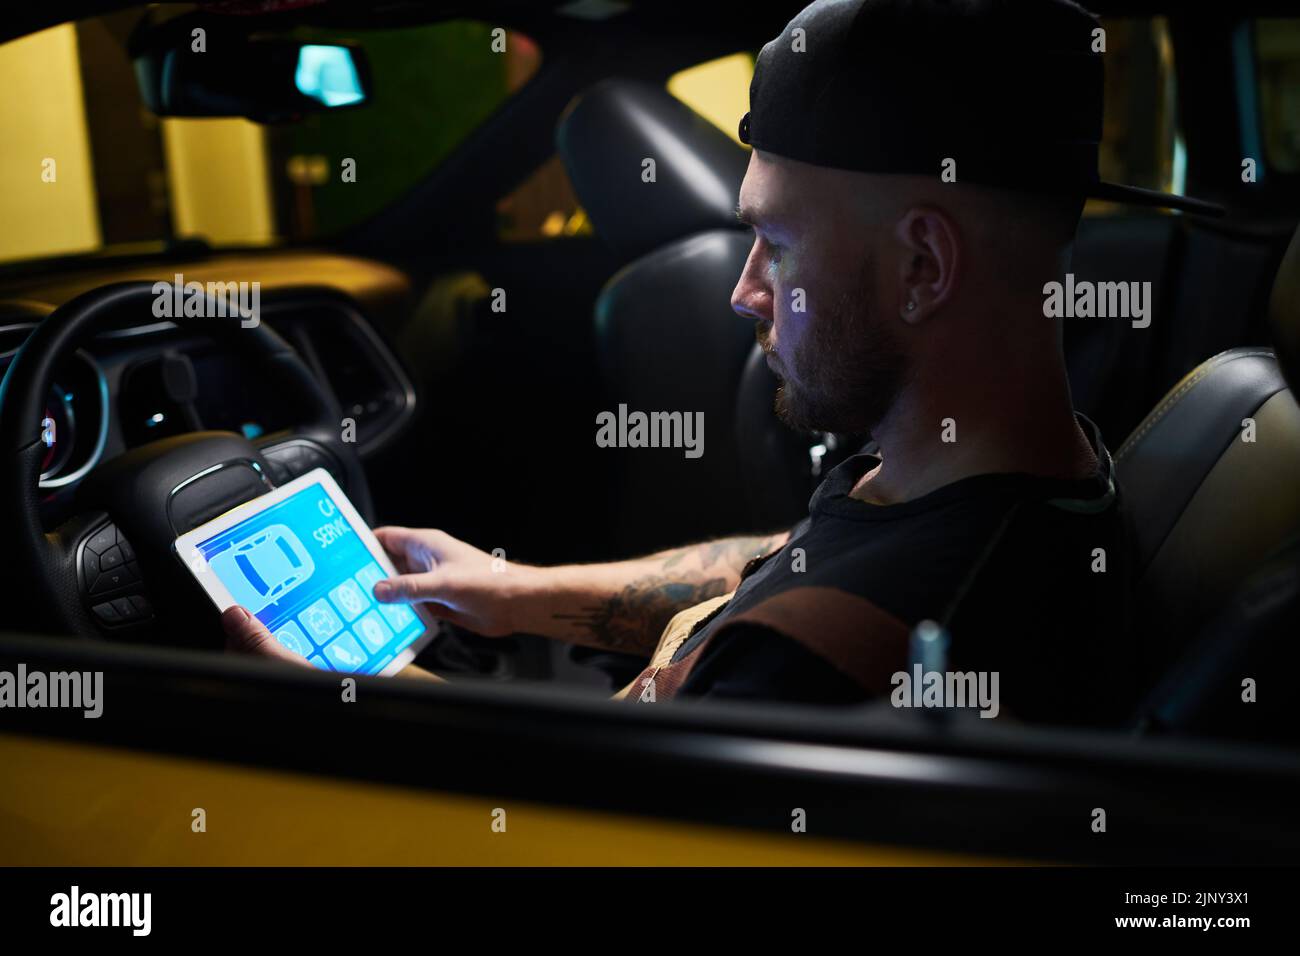 Técnico o mecánico joven con tableta digital mirando los iconos en la pantalla del gadget mientras se sienta delante del volante en el coche Foto de stock